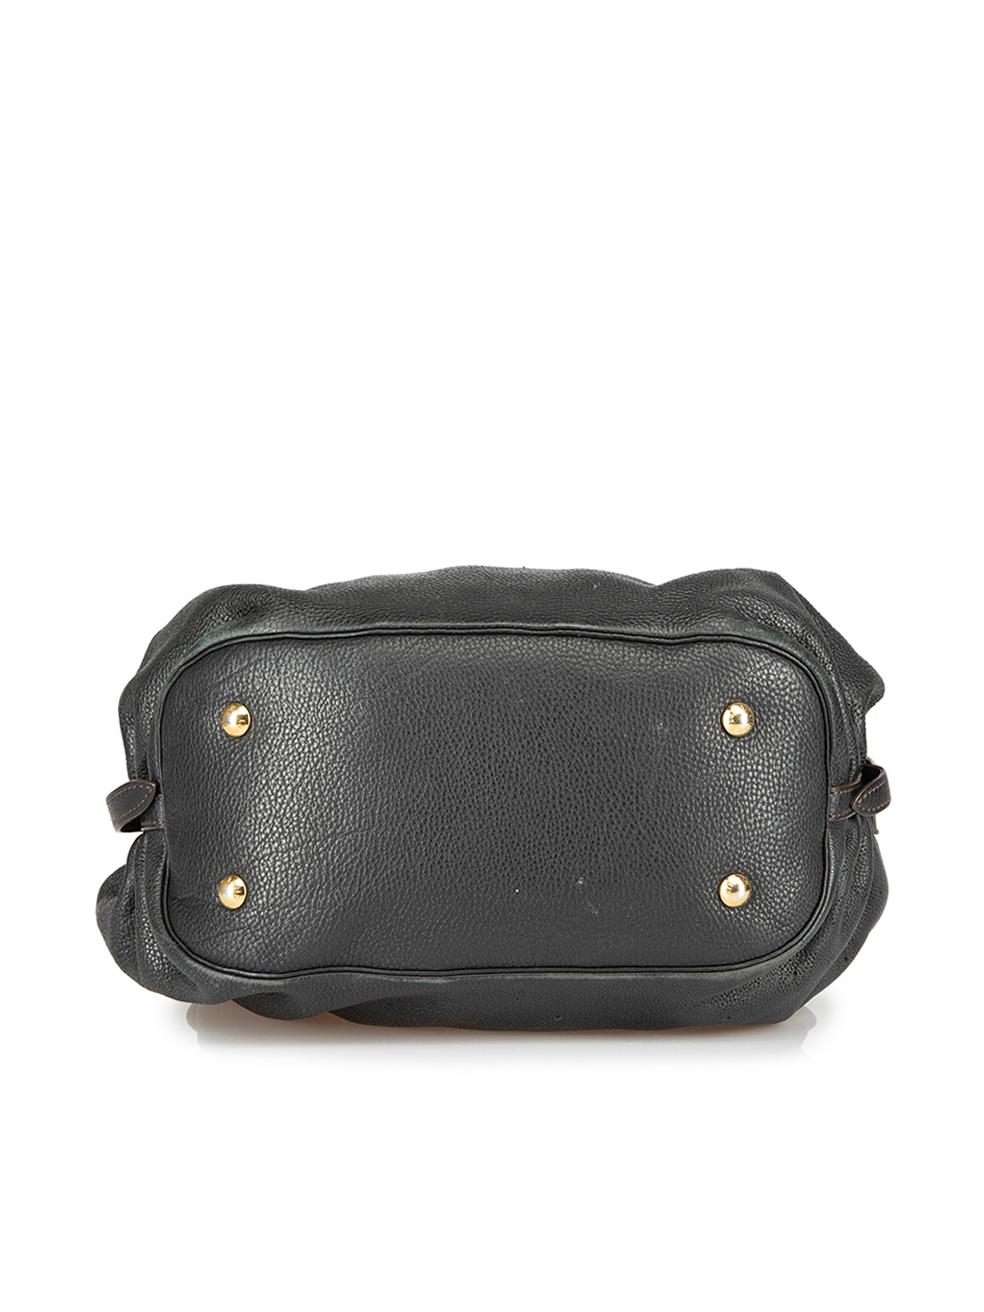 Women's Louis Vuitton Black Mahina XL Hobo Bag